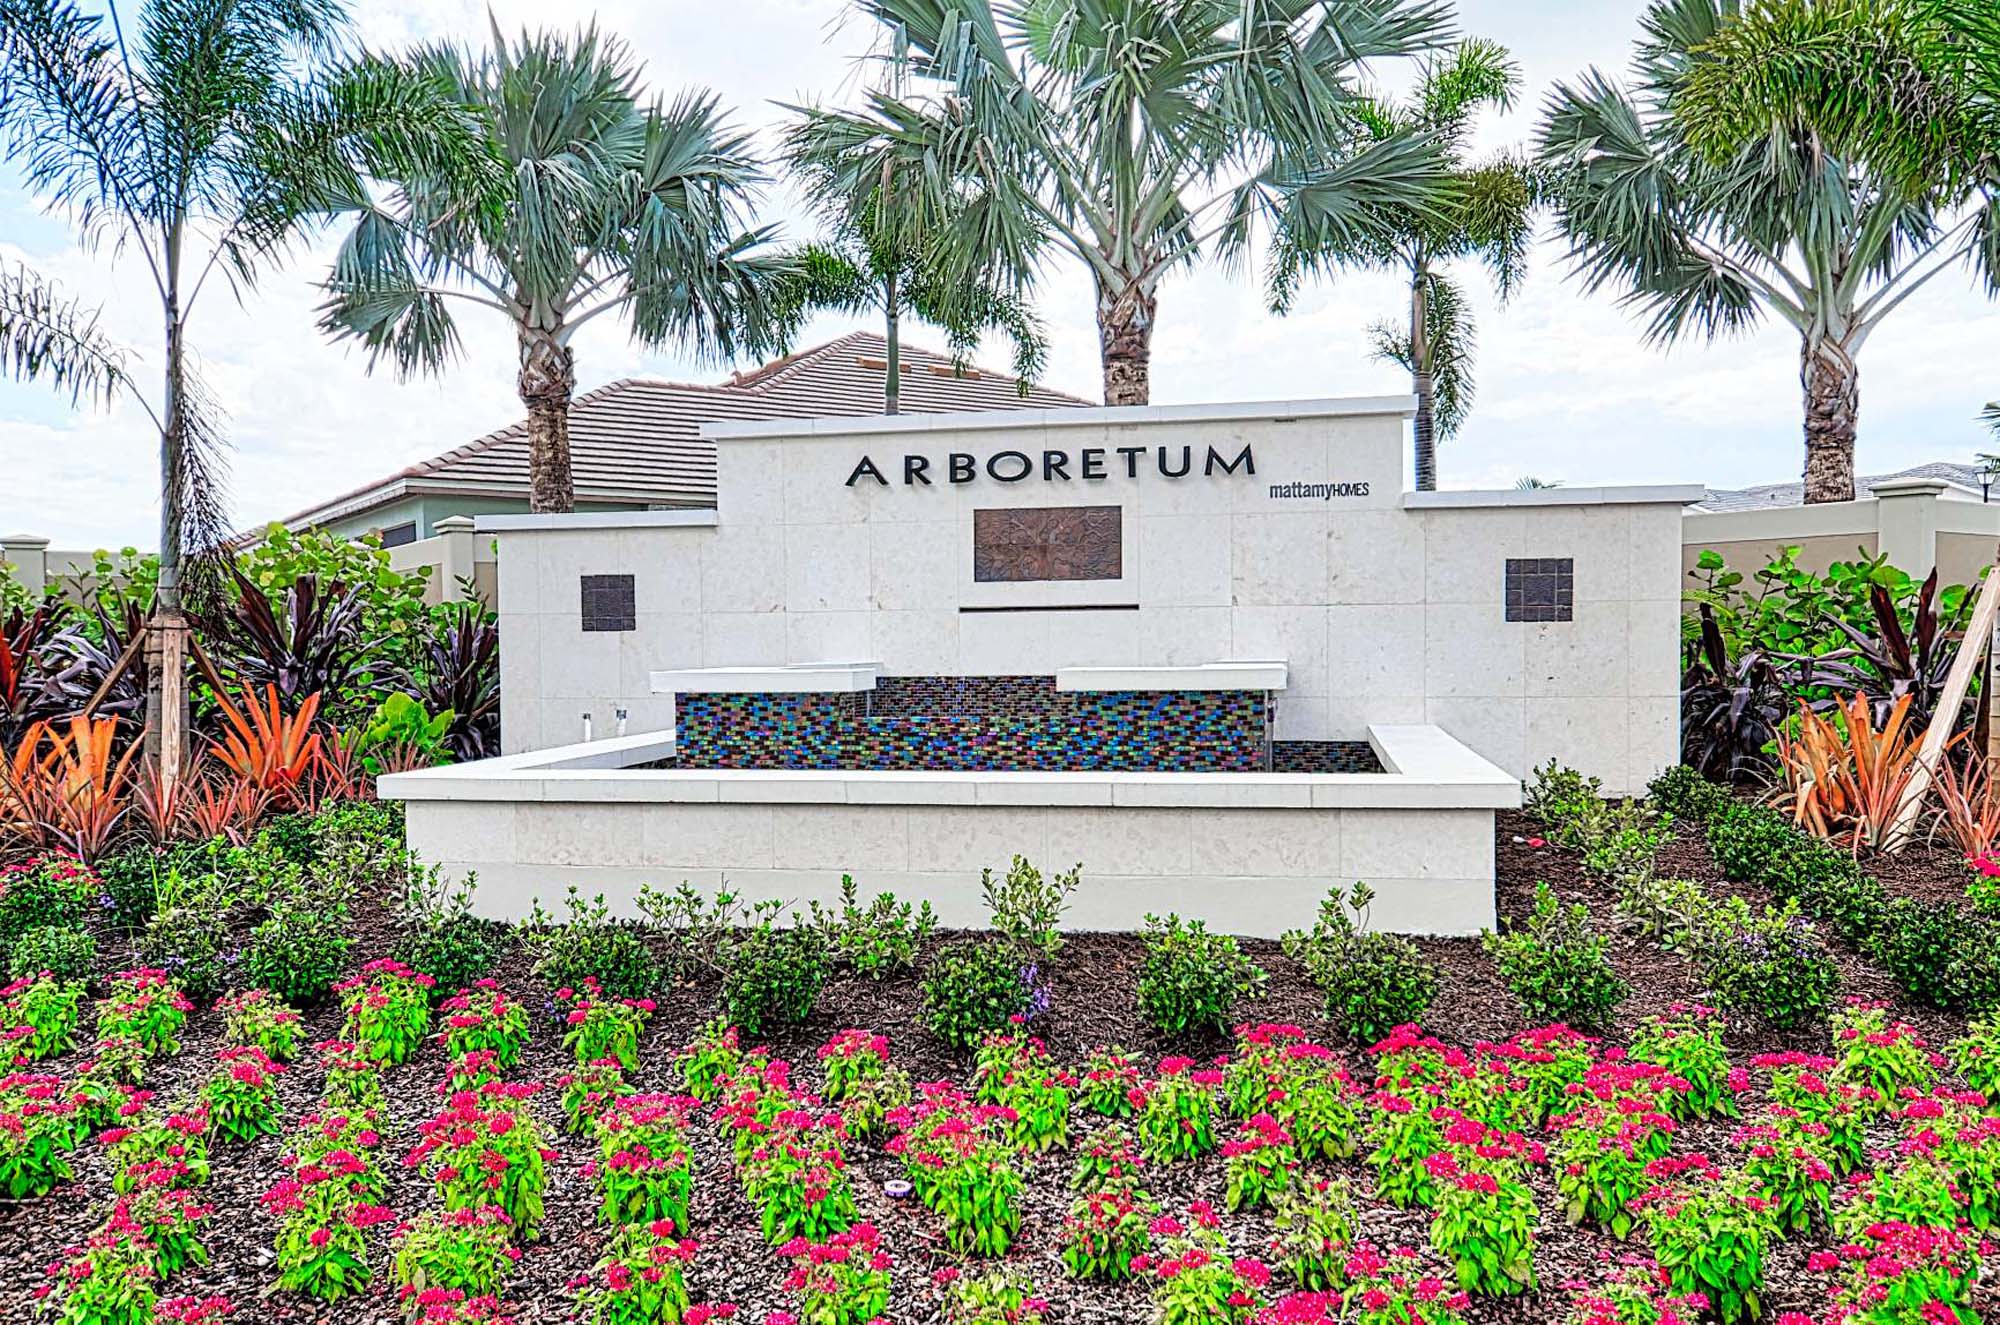 ARBORETUM, Naples, Florida,  image description: Arboretum - Naples FL  Entrance